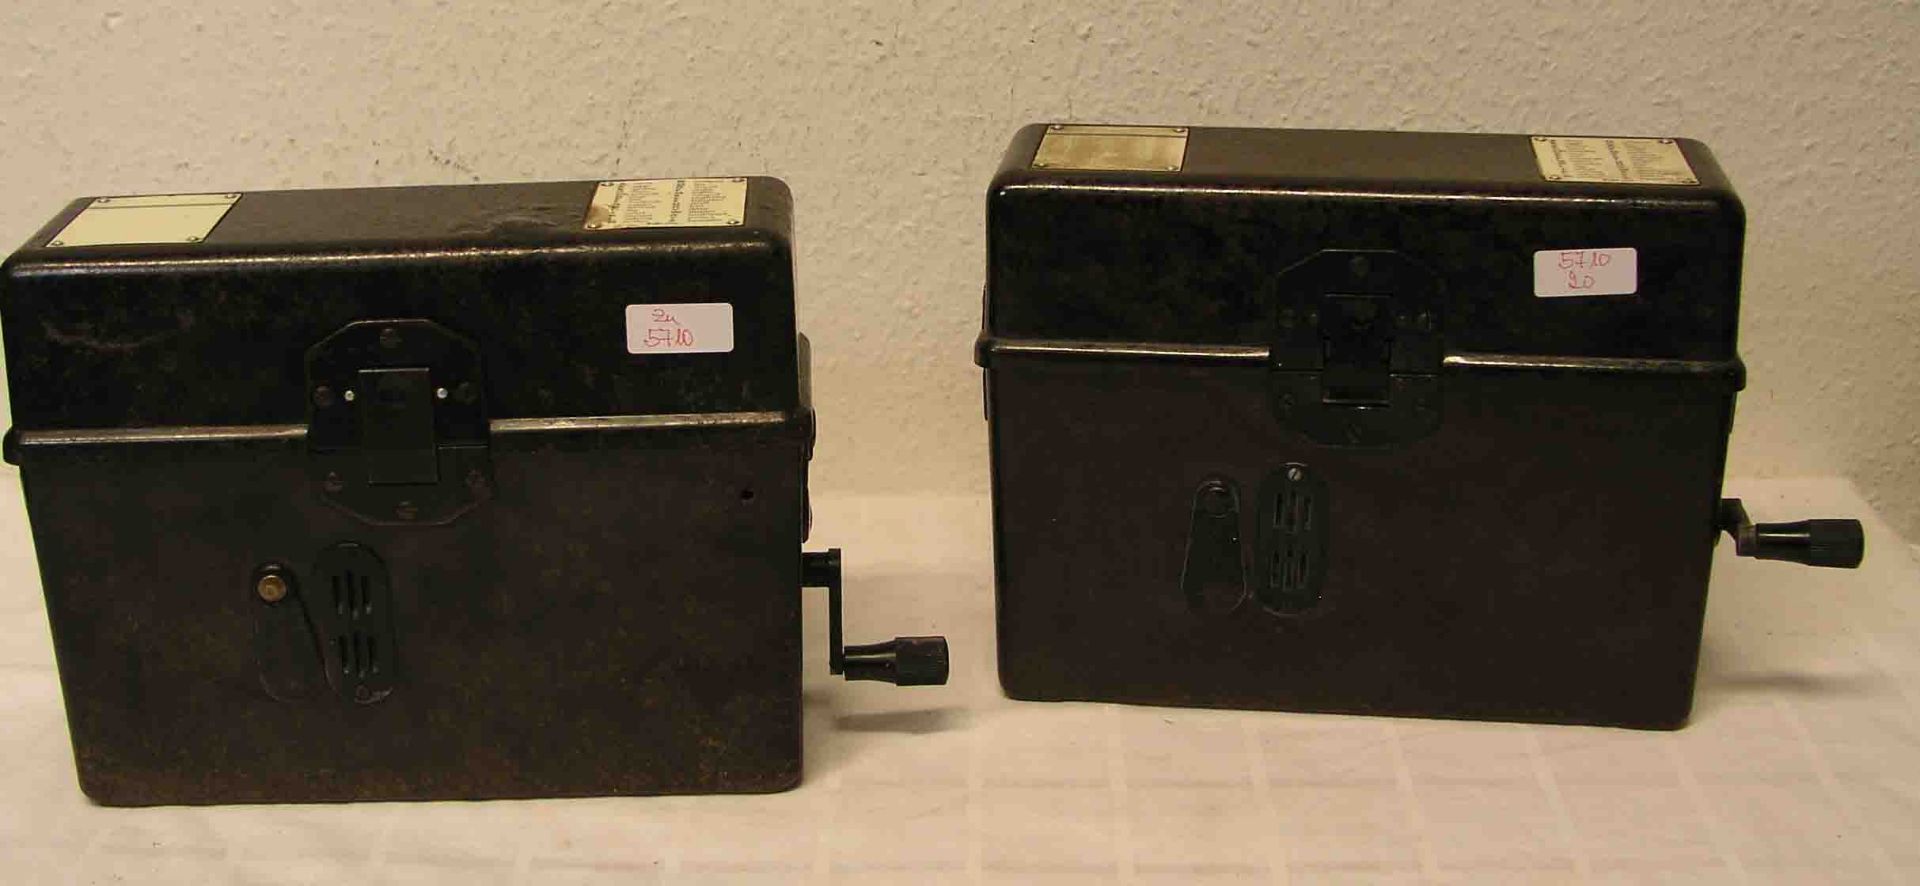 Zwei Feldposttelefone. II. Weltkrieg. Bakelitgehäuse; ein Eck ausgebrochen.